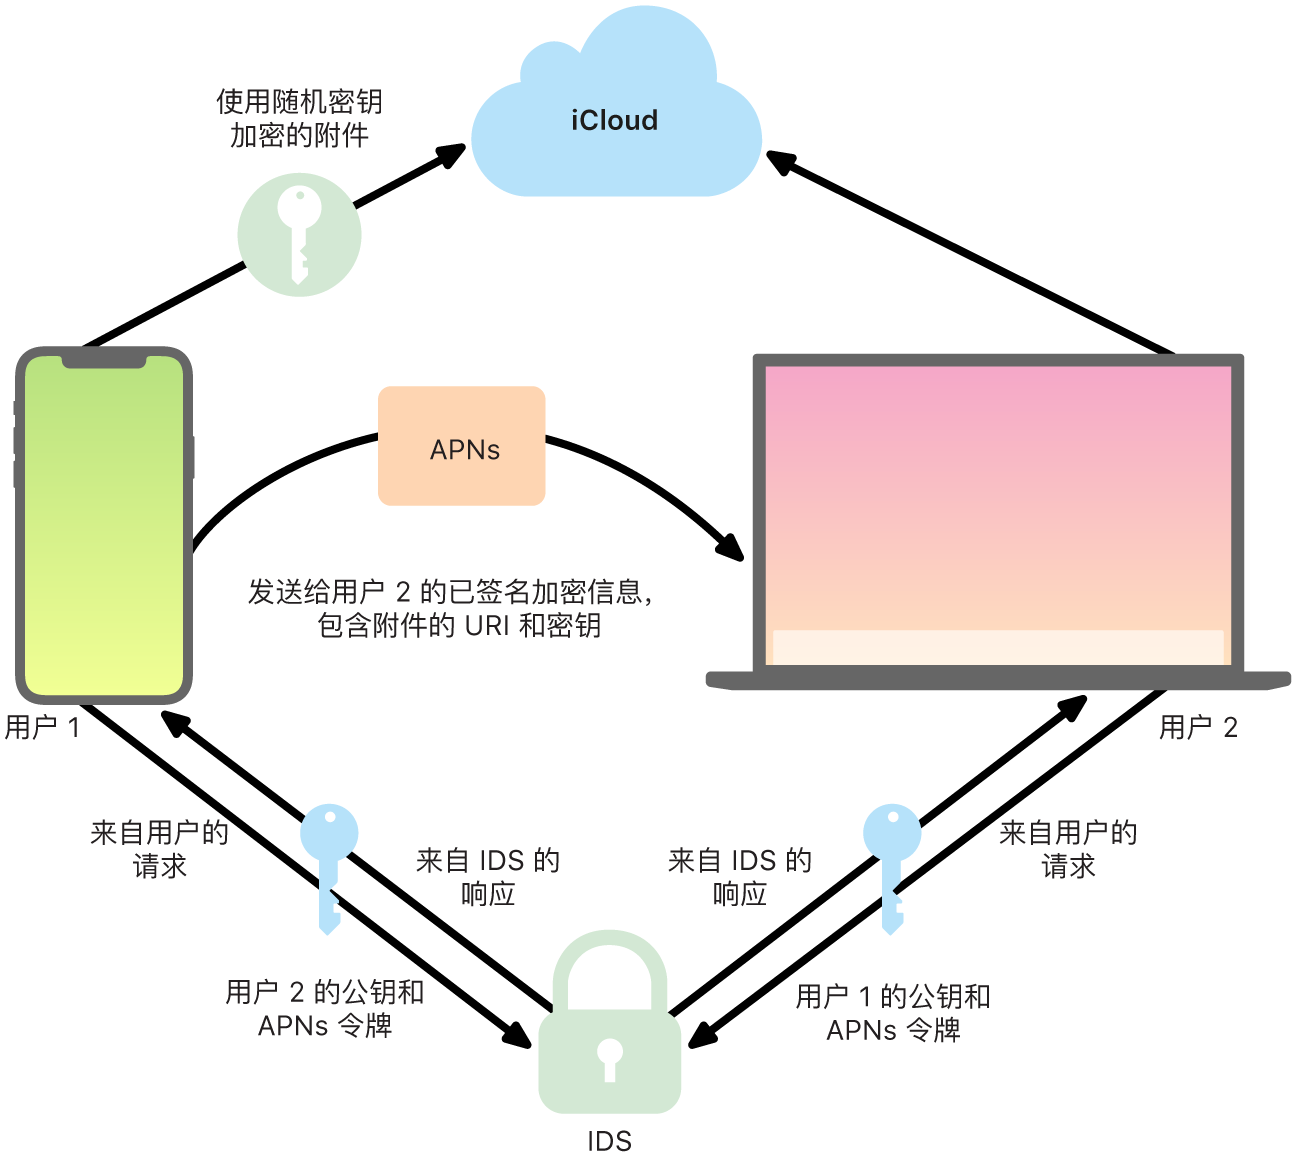 图表显示 iMessage 信息如何发送和接收信息。